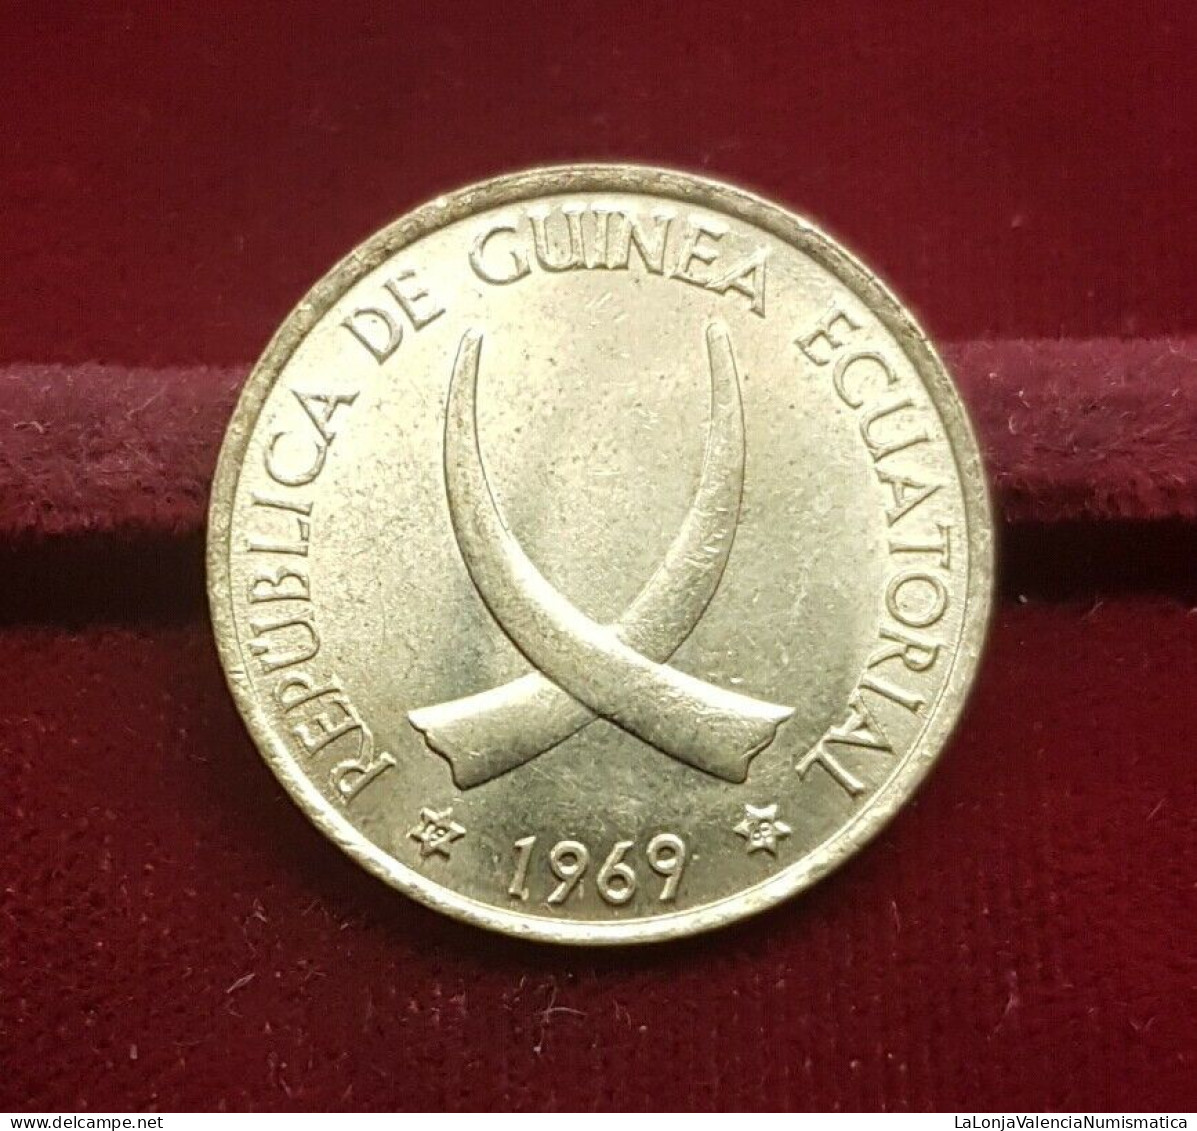 Guinea Ecuatorial Equatorial 1 Peseta Guineana 1969 *69 Km 1 Sc Unc - Guinée Equatoriale